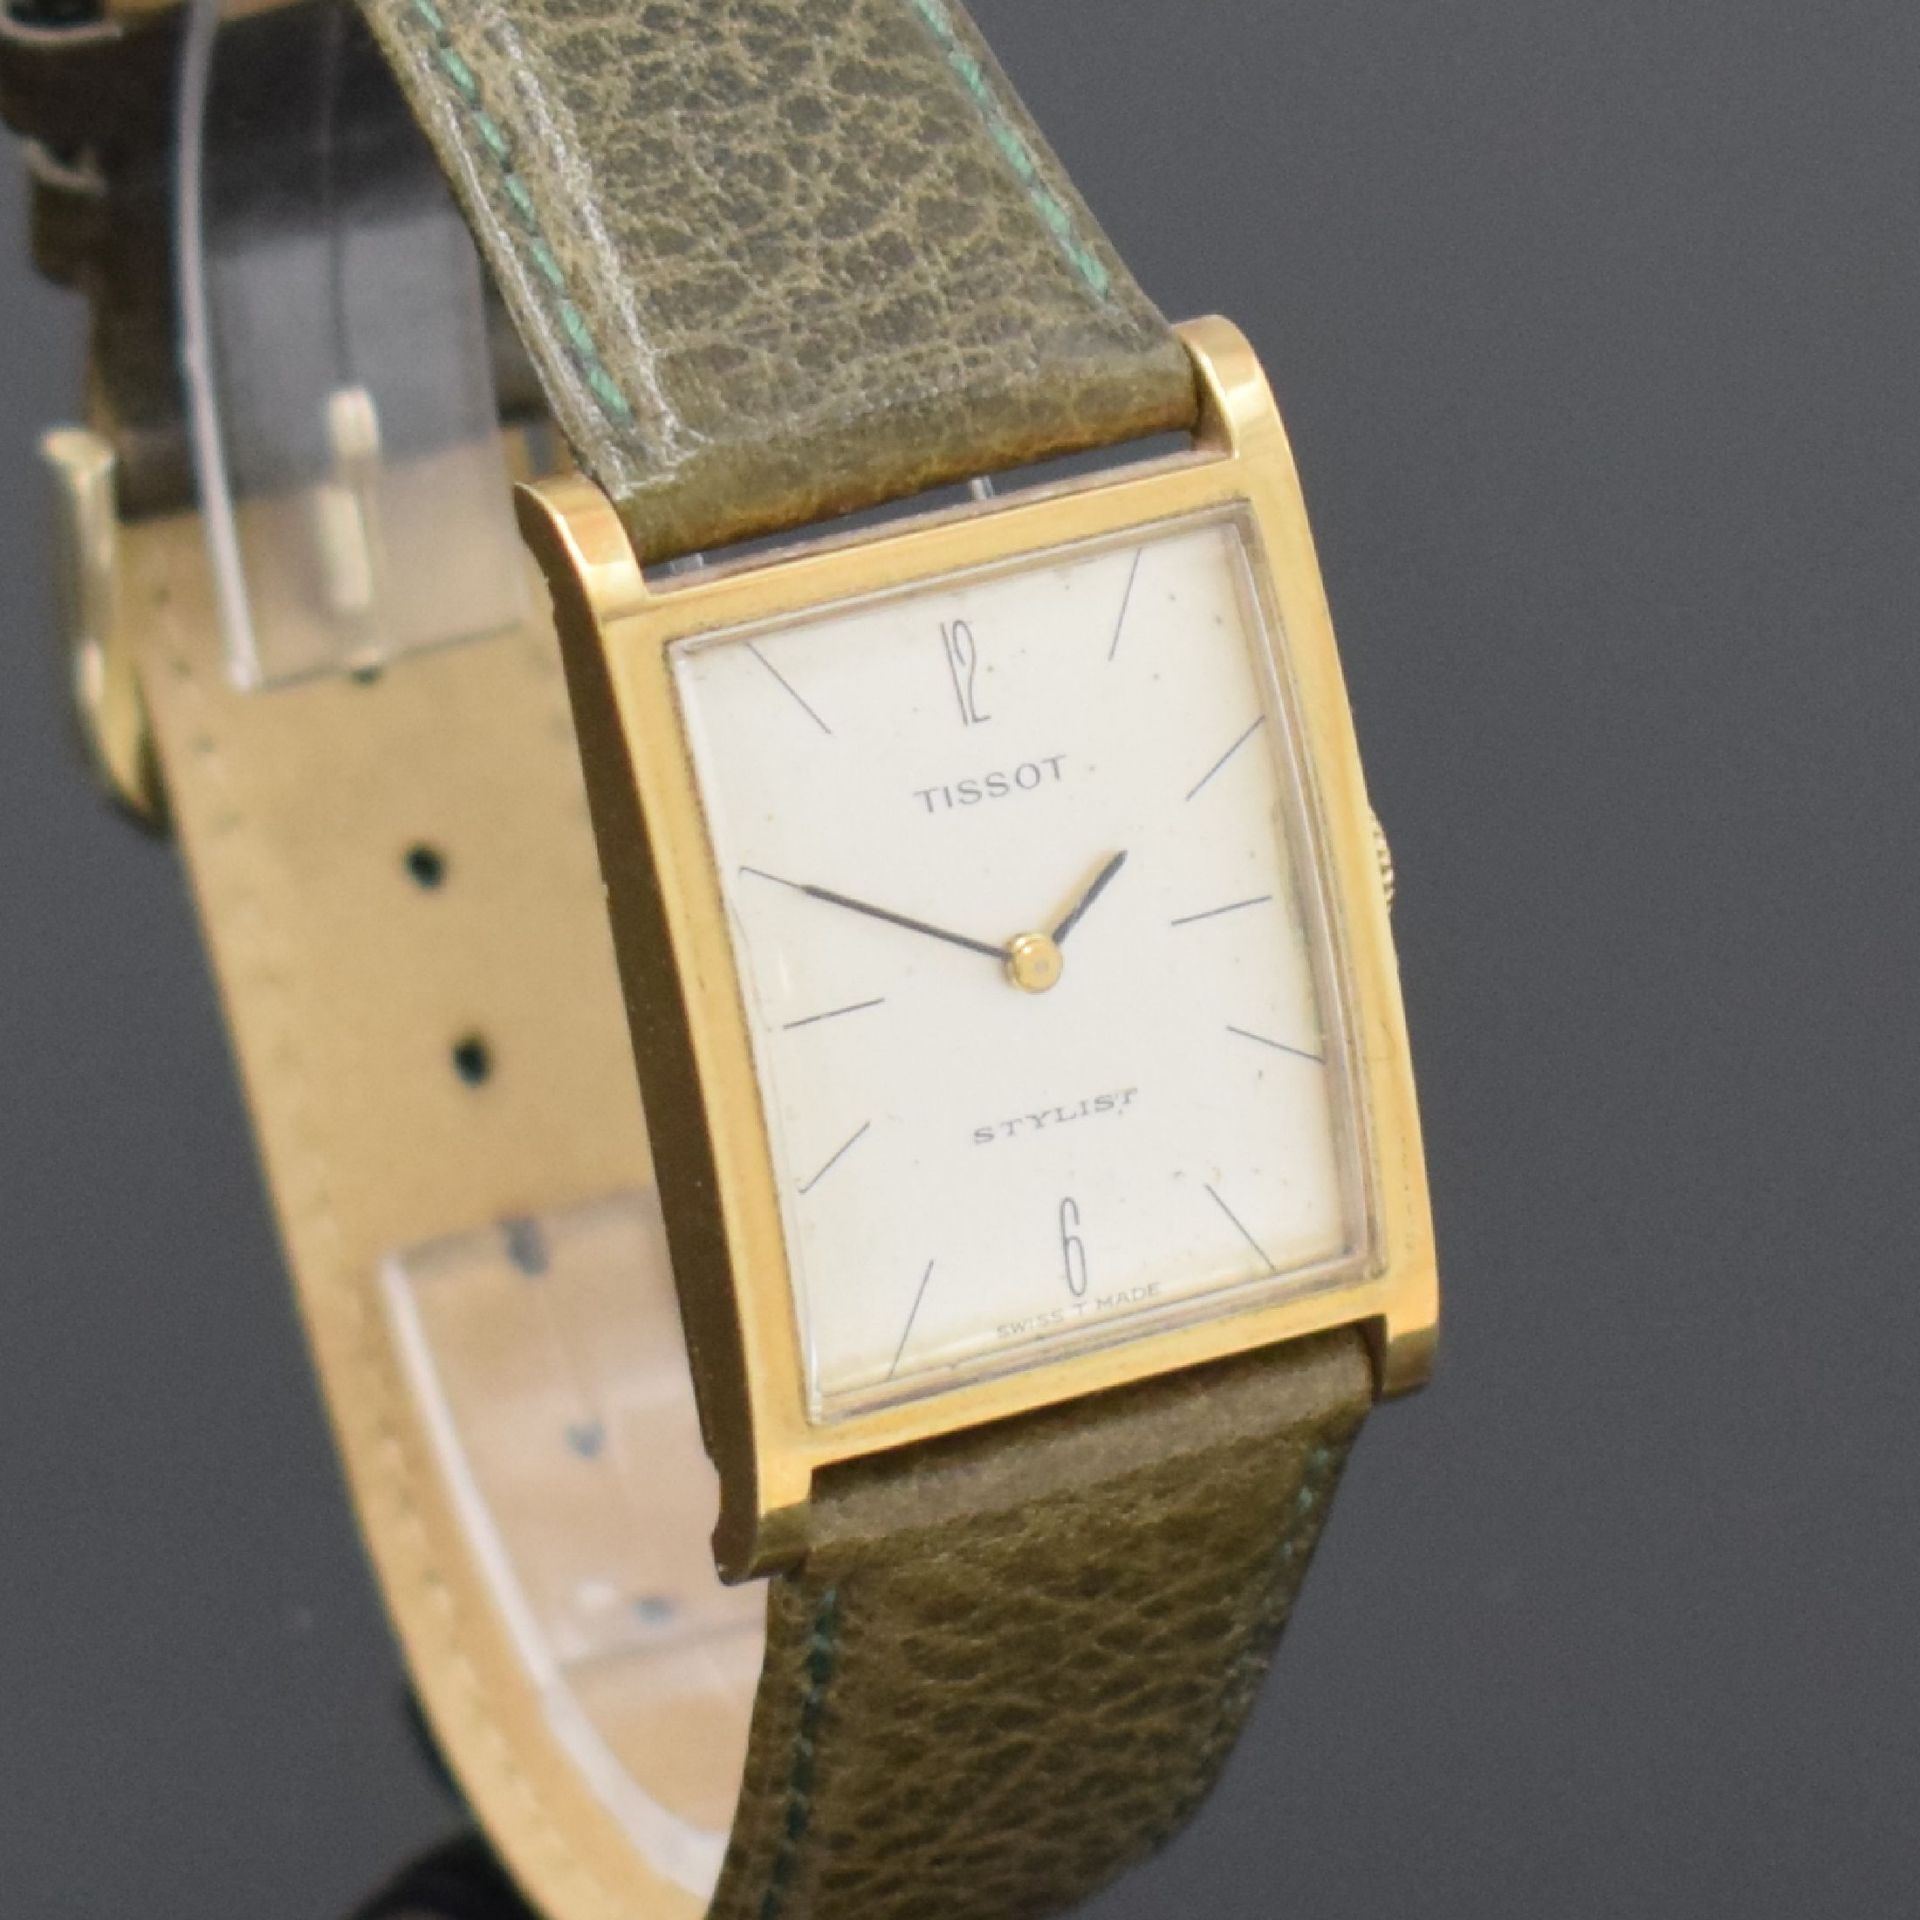 TISSOT Stylist Armbanduhr in GG 585/000, Schweiz um 1965, - Bild 4 aus 5